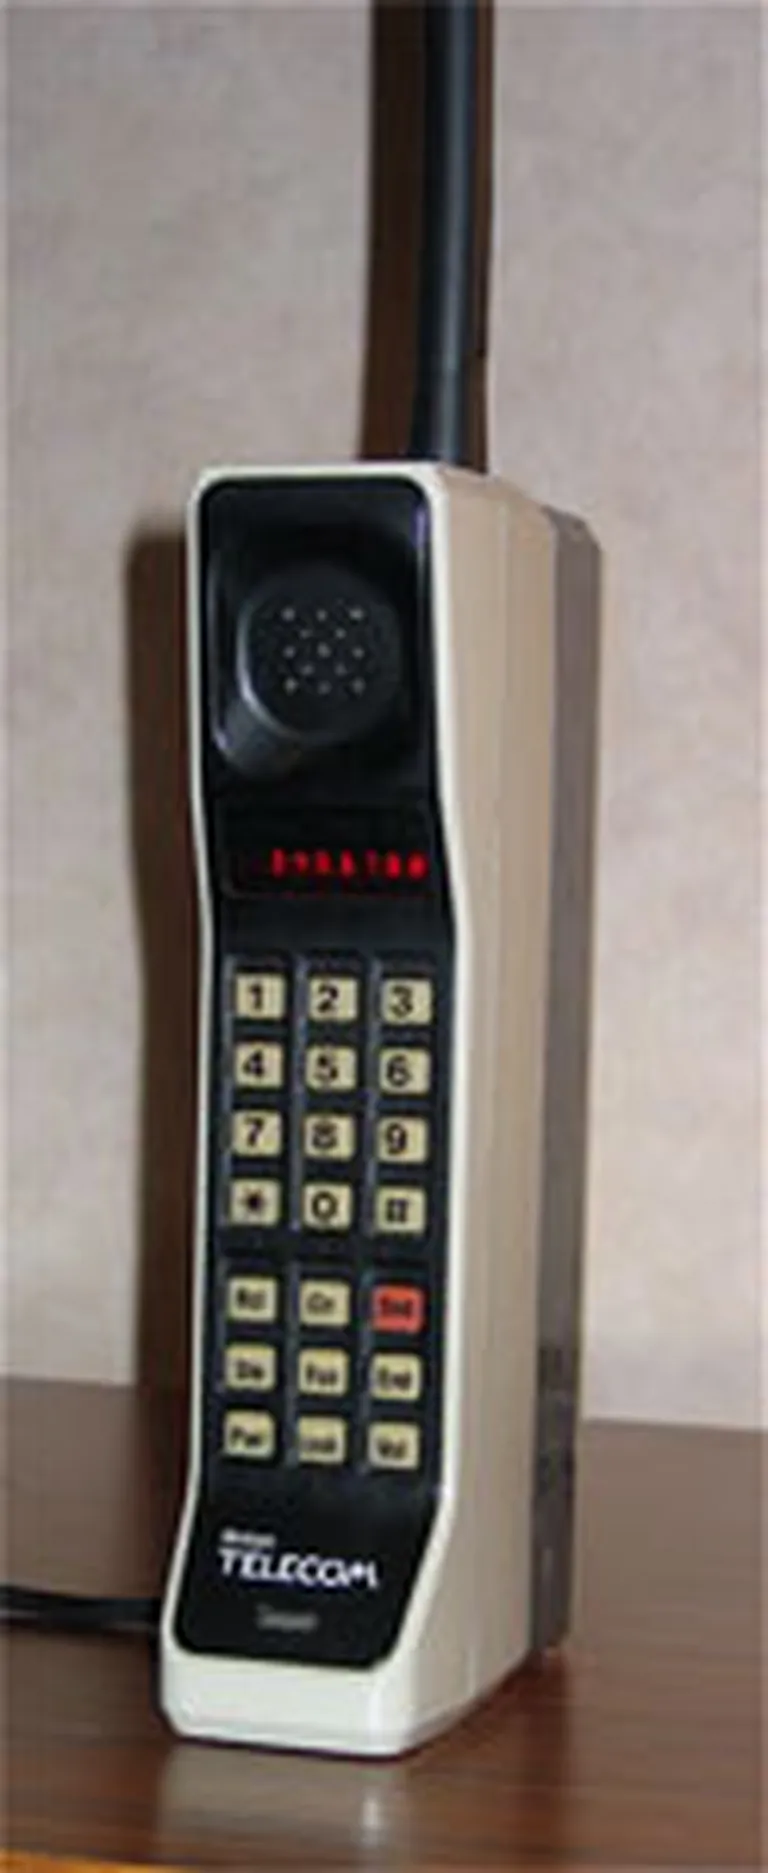 Pirmais sērijveida mobilais tālrunis Motorola DynaTac 8000x (1983. gads) 